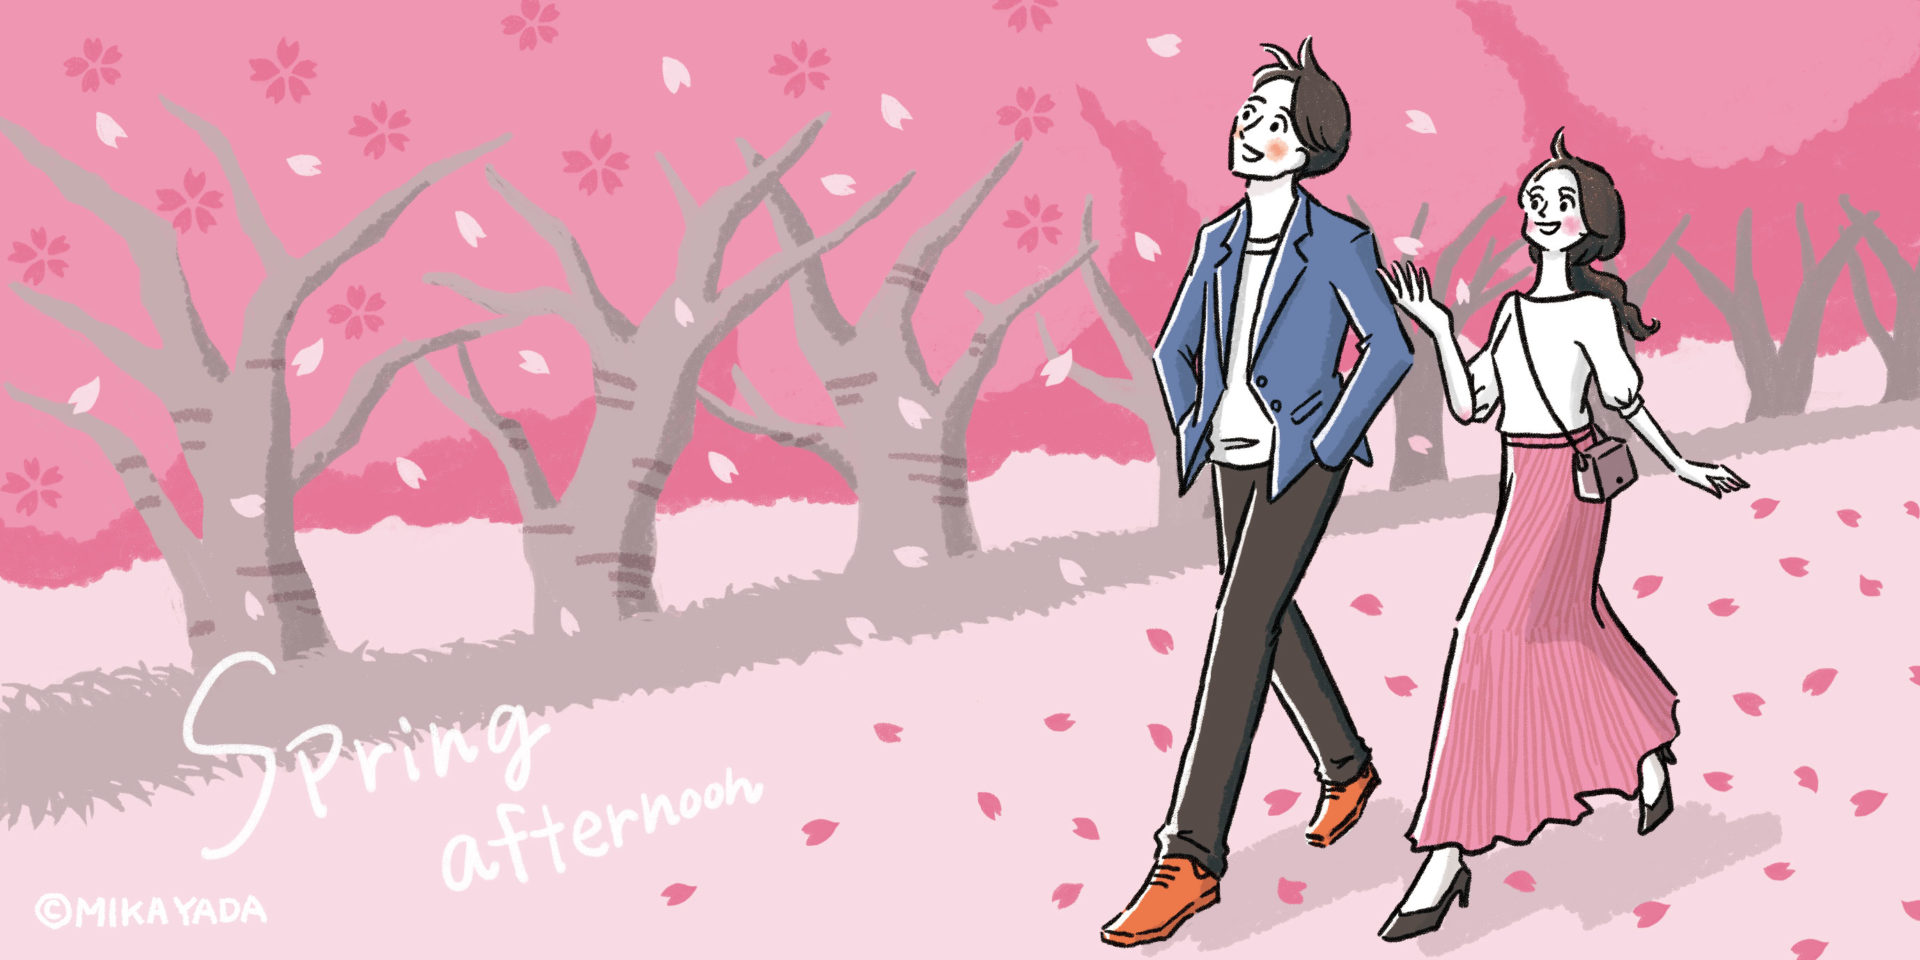 Spring afternoon　春の昼下がりのイラストイメージ。 桜が舞い散る、桜並木を男女のカップルが散歩しているイメージ。